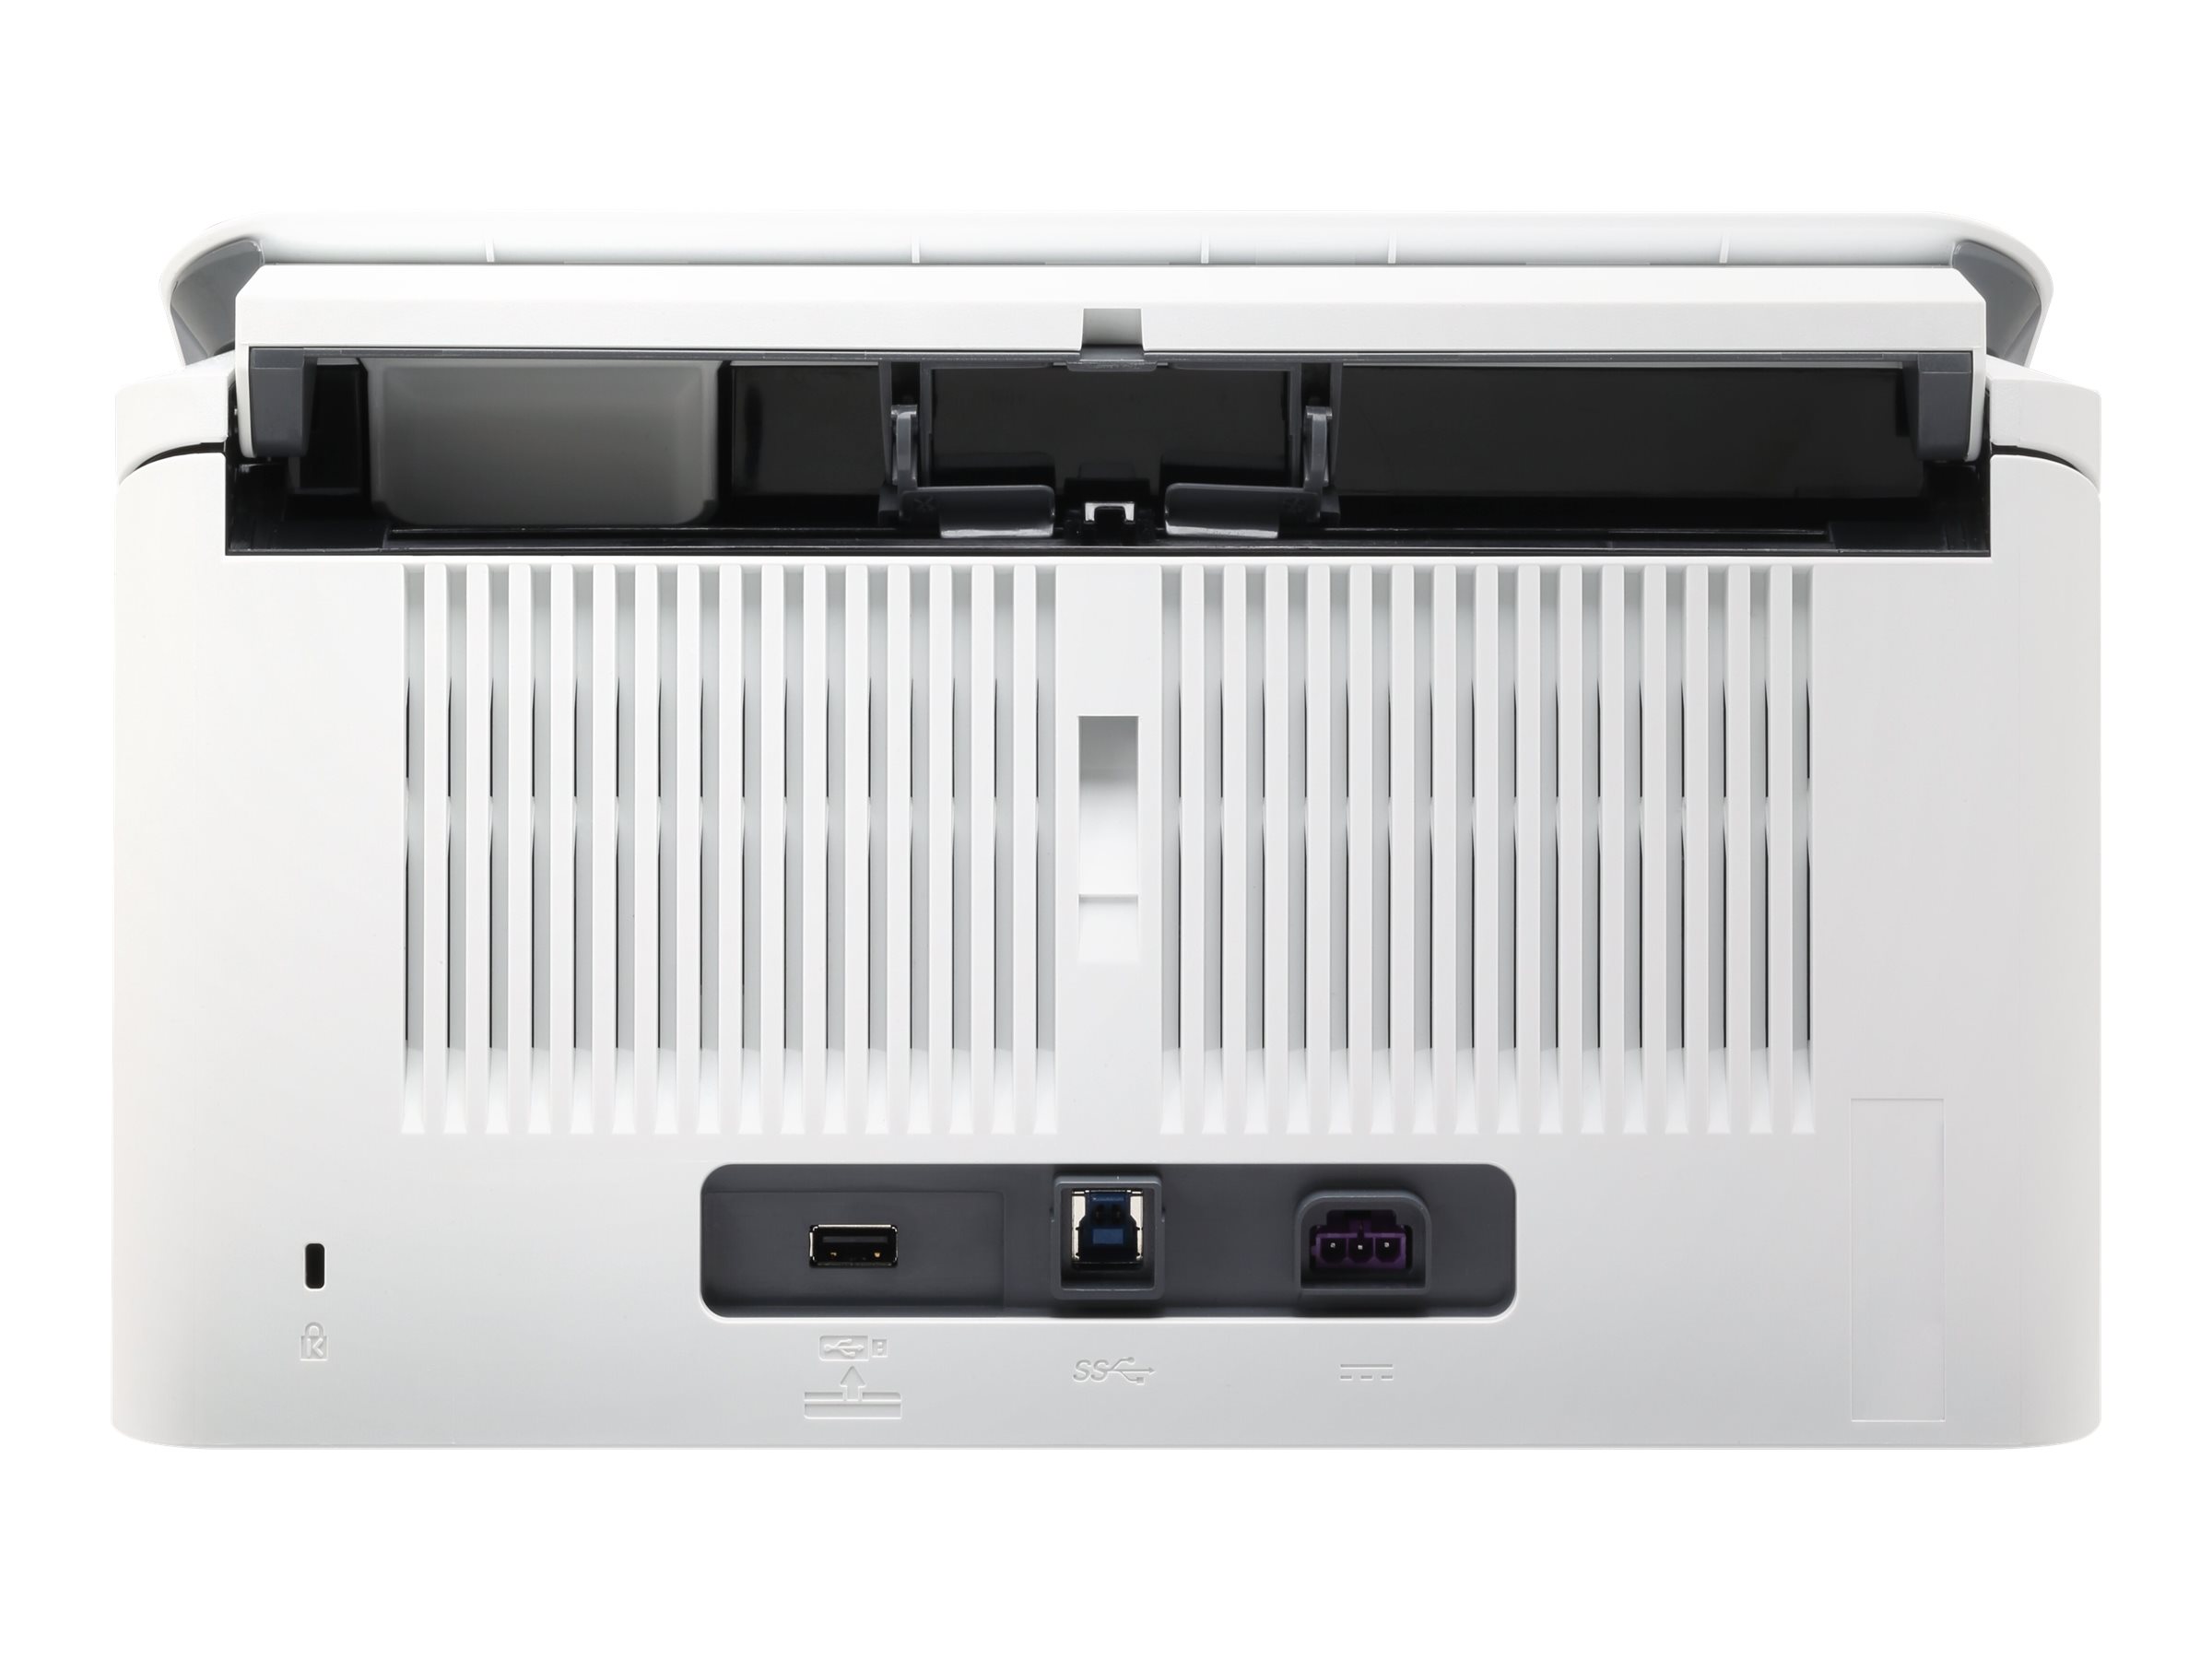 HP ScanJet Enterprise Flow 5000 s5 - Dokumentenscanner - CMOS / CIS - Duplex - 216 x 3100 mm - 600 dpi x 600 dpi - bis zu 65 Seiten/Min. (einfarbig)